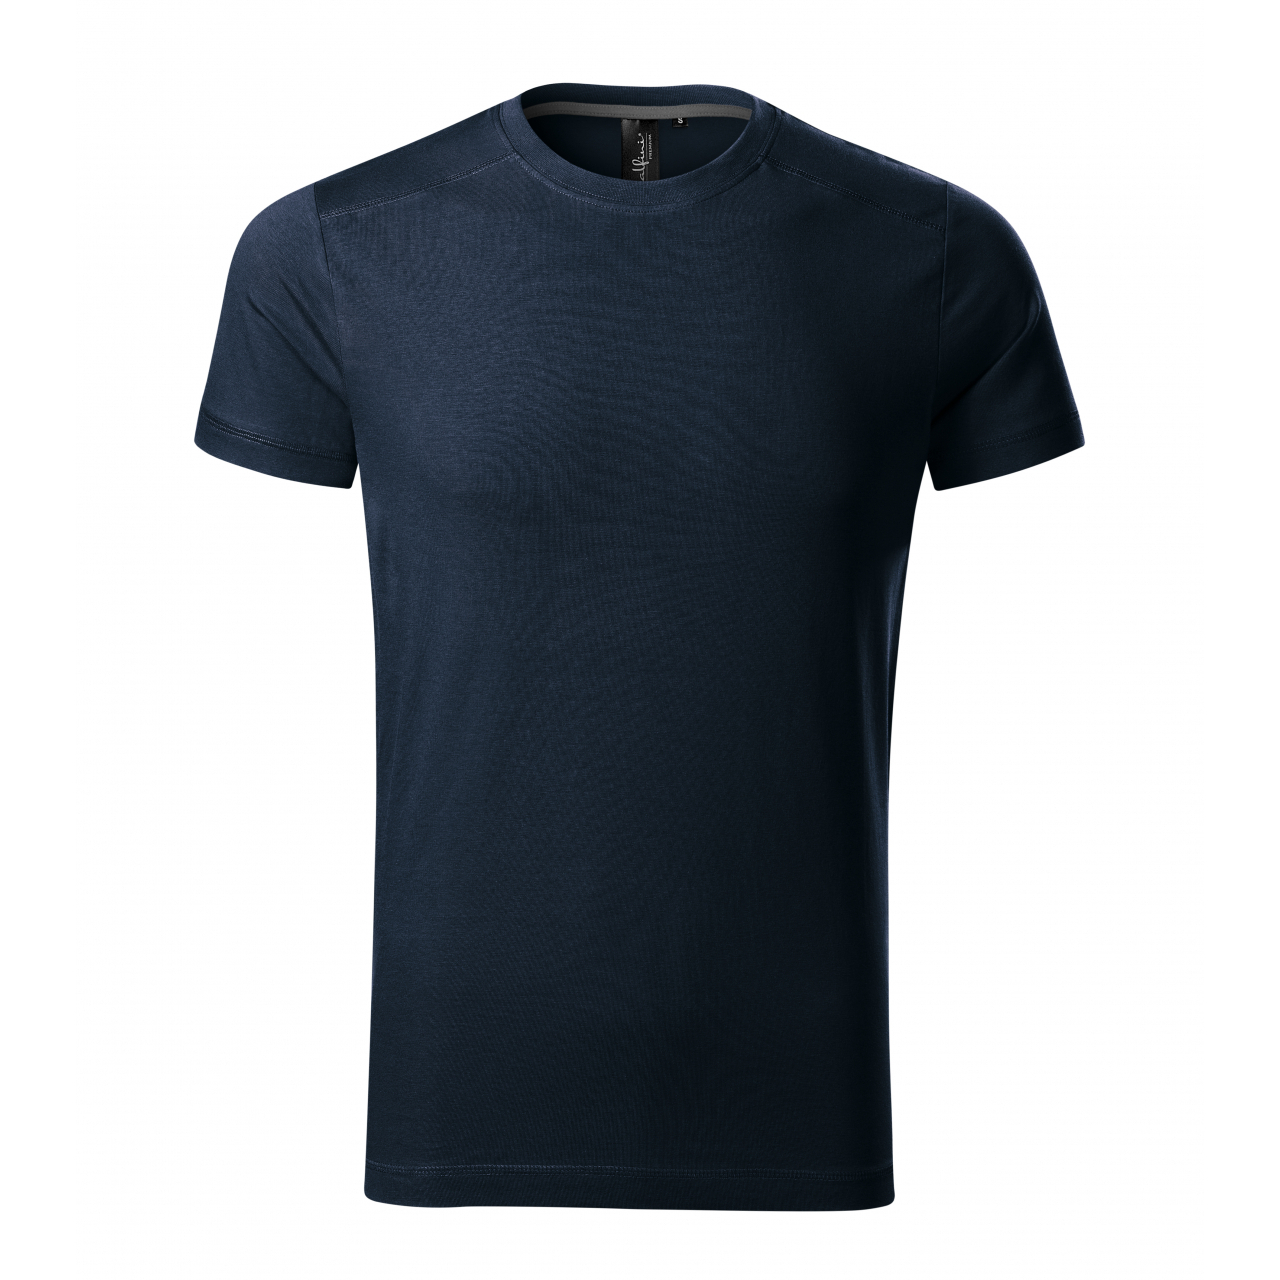 Tričko pánské Malfini Action - tmavě modré, XL